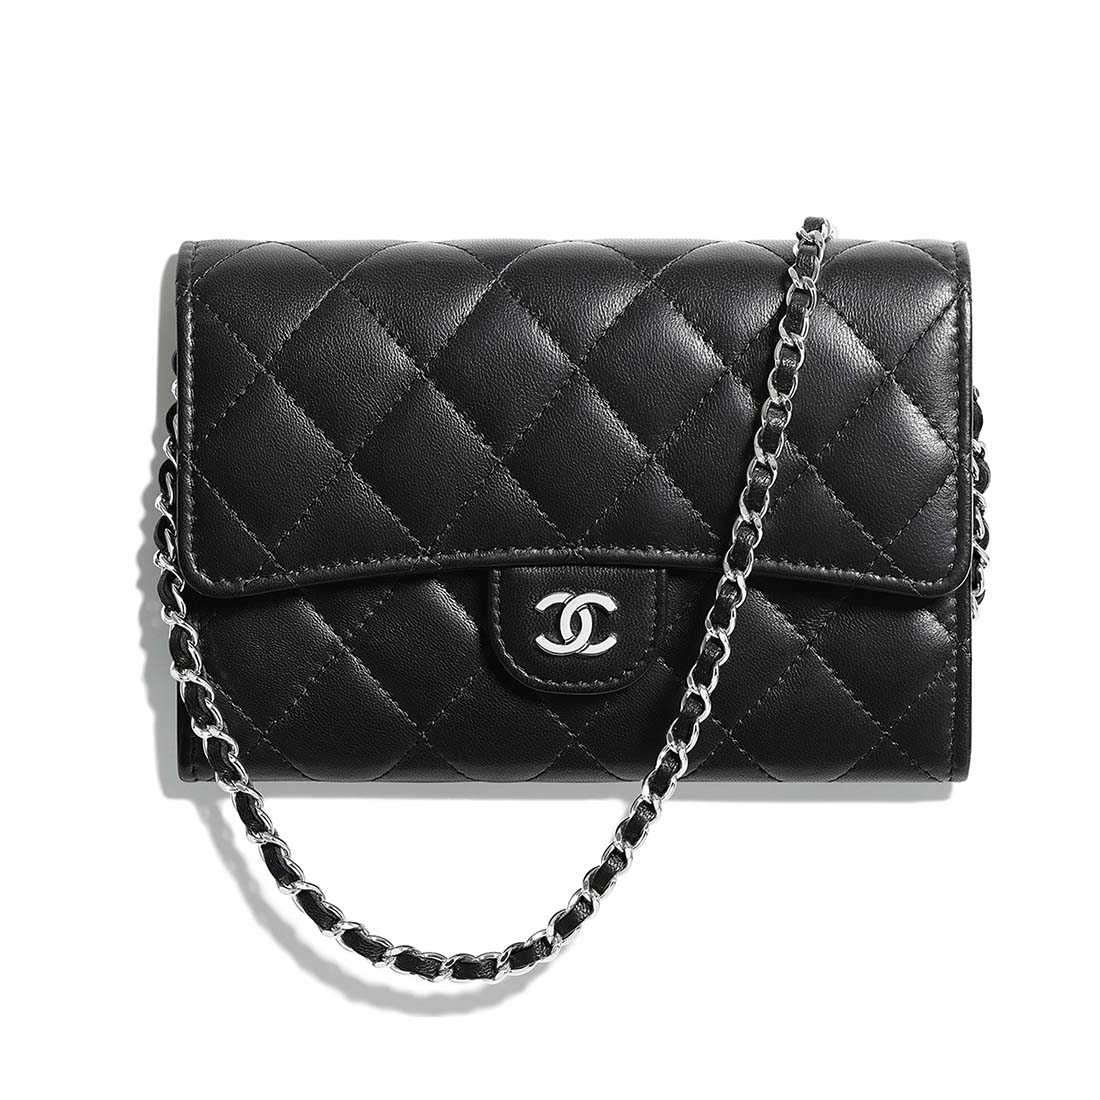 Chanel clutch bag